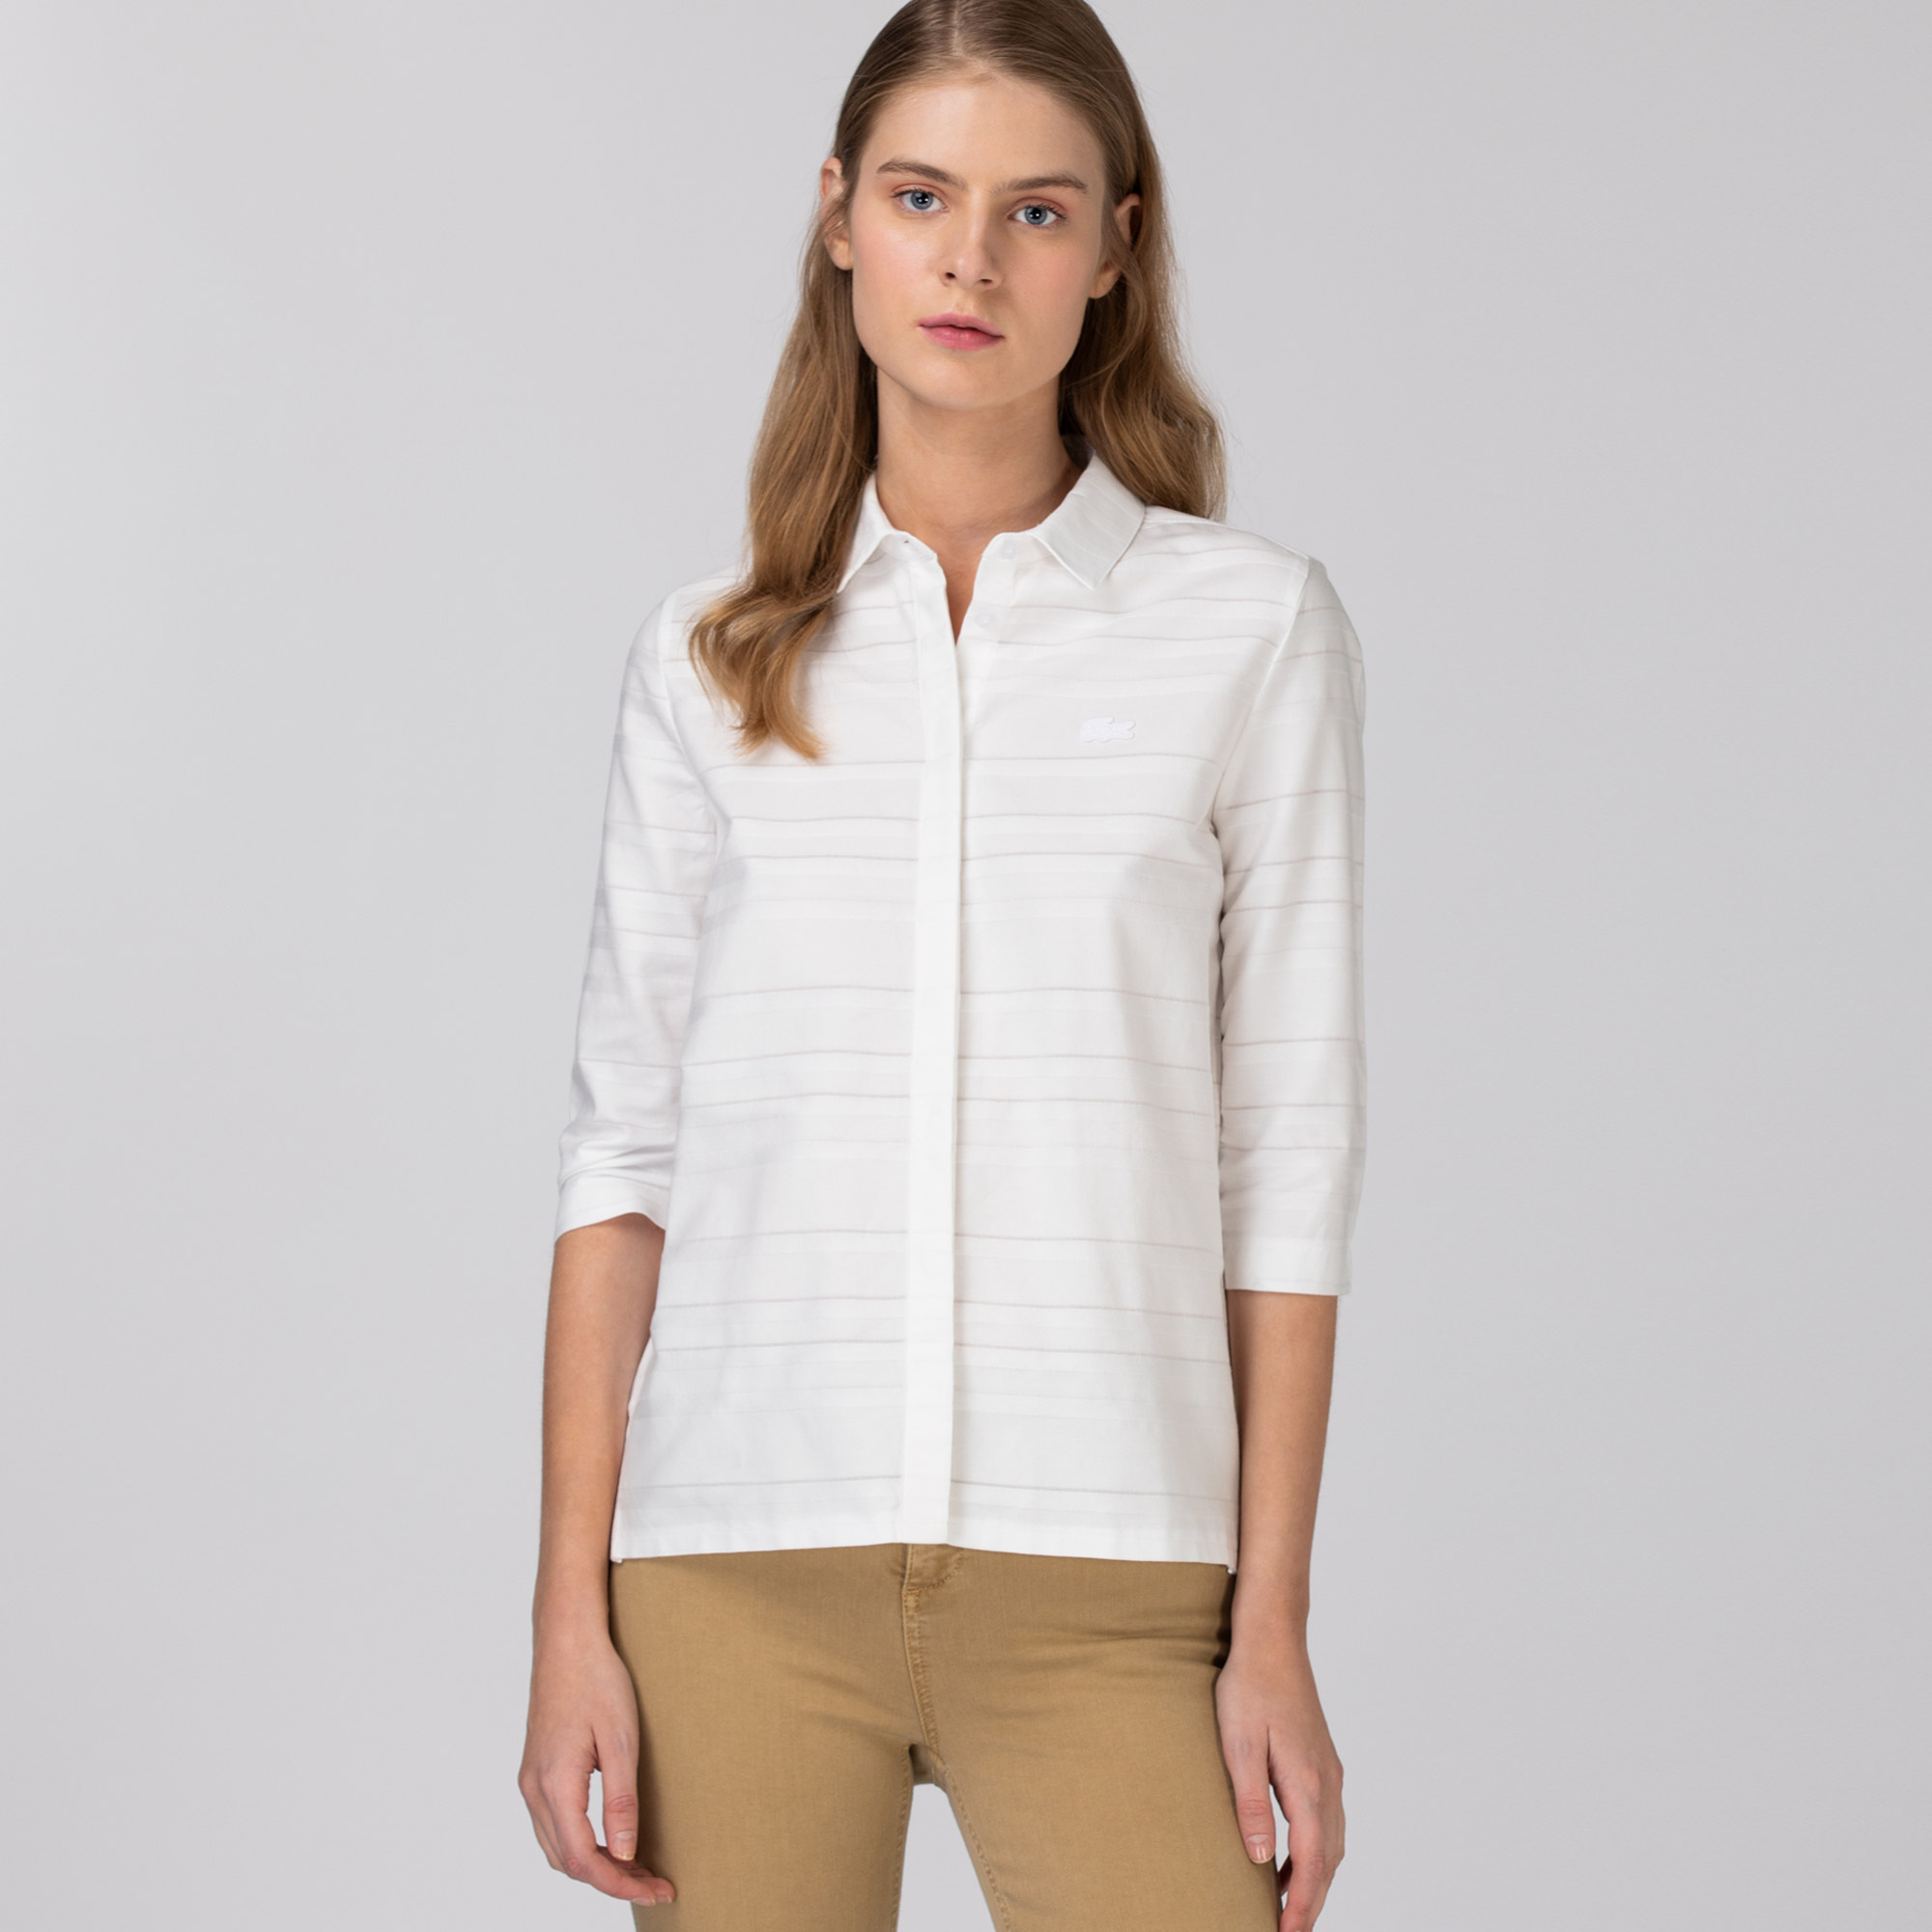 Lacoste dámská tkaná košile s dlouhými rukávy